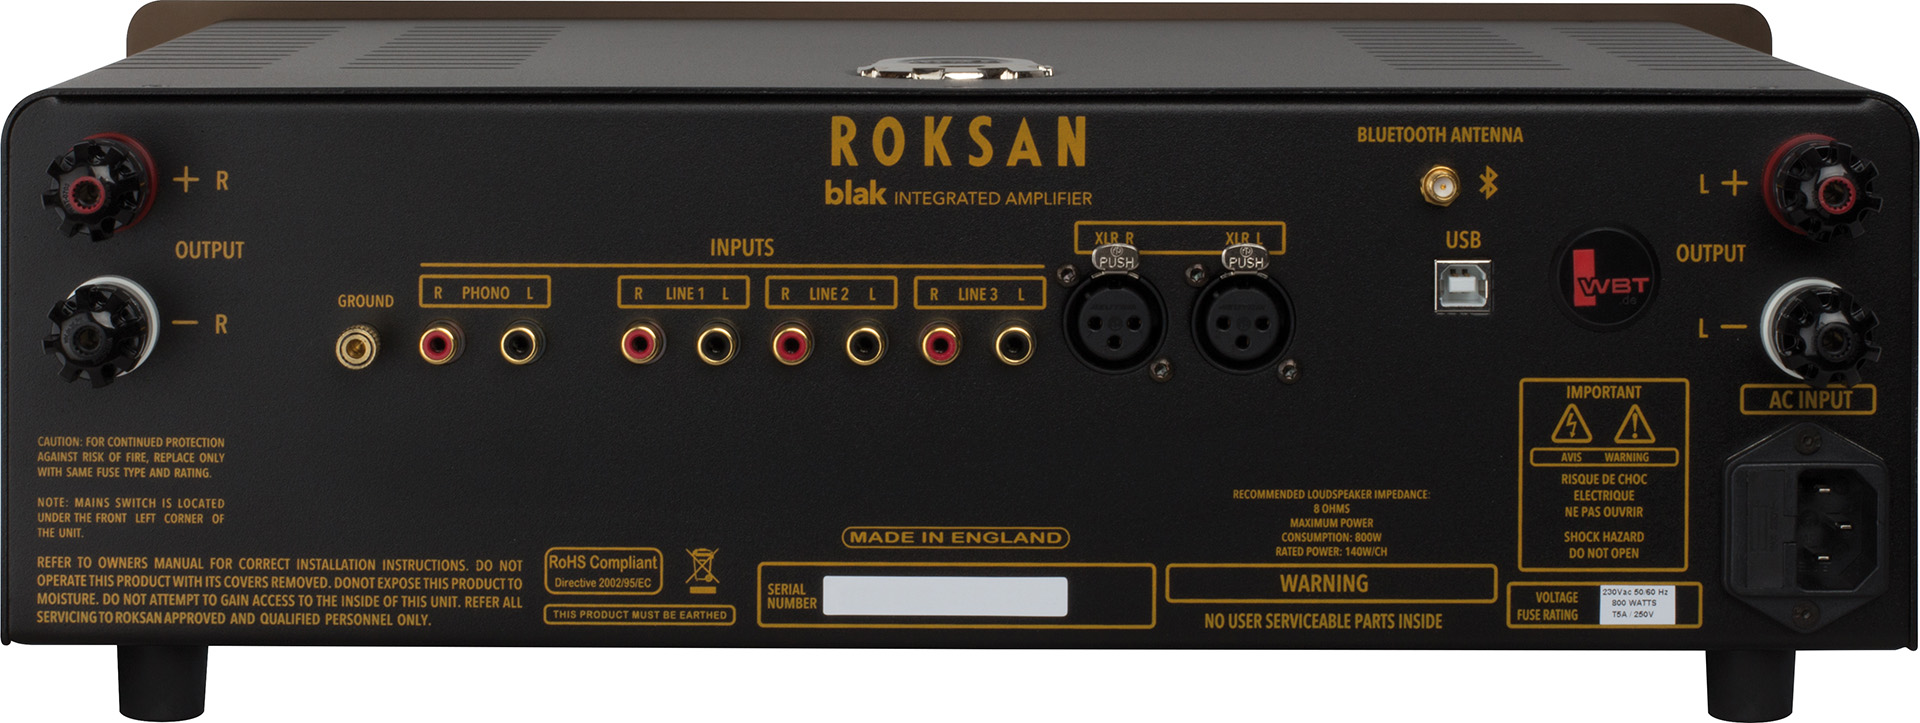 Мощь, слаженность и детальность звучания: пять звёзд «What Hi-Fi?» для Roksan blak